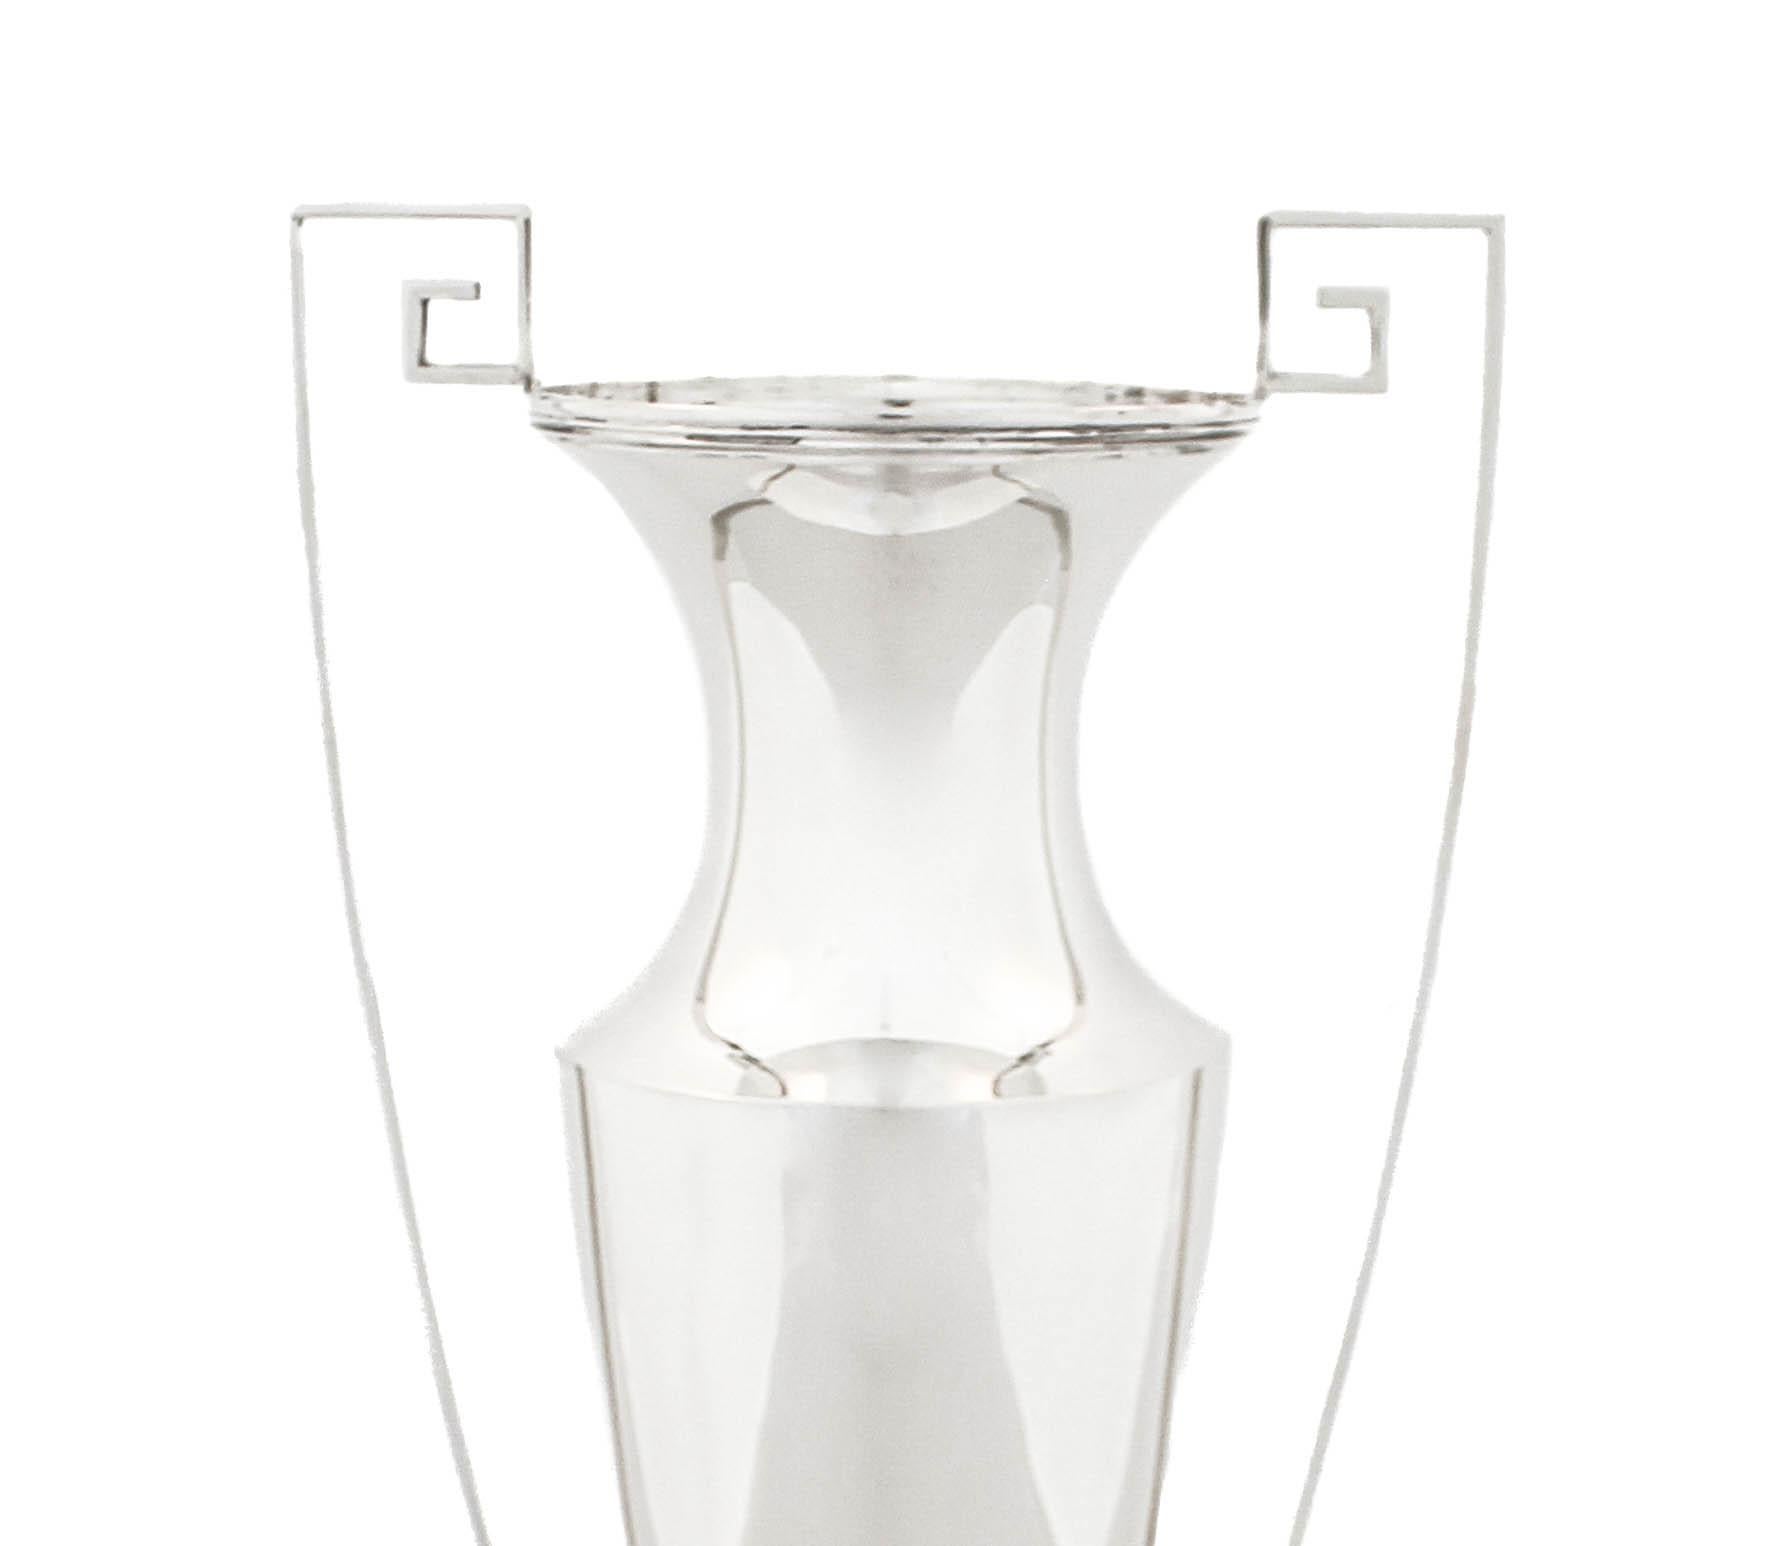 Angeboten wird eine Vase aus Sterlingsilber von Marcus & Company mit dem Muster 